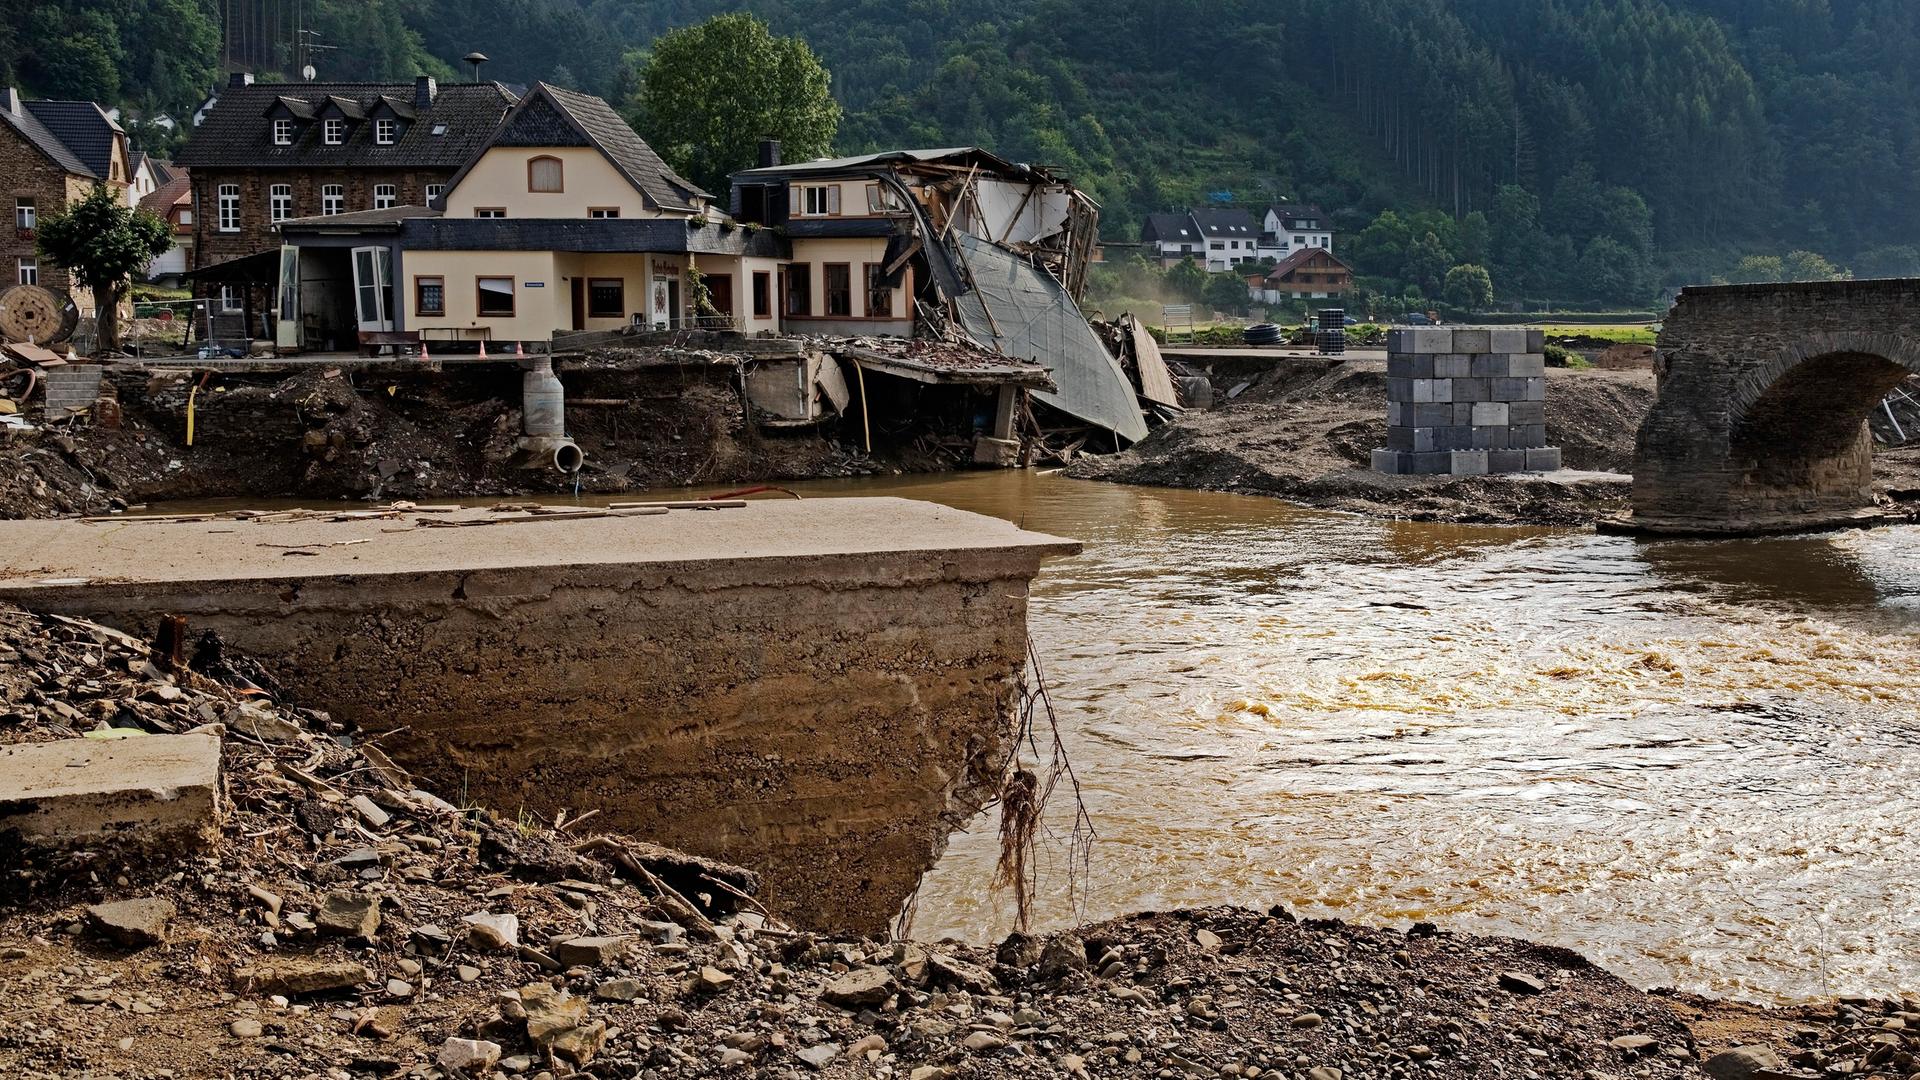 Blick auf die zerstörte Nepomuk-Brücke über den Fluss Ahr im Ahrtal in Rheinland-Pfalz